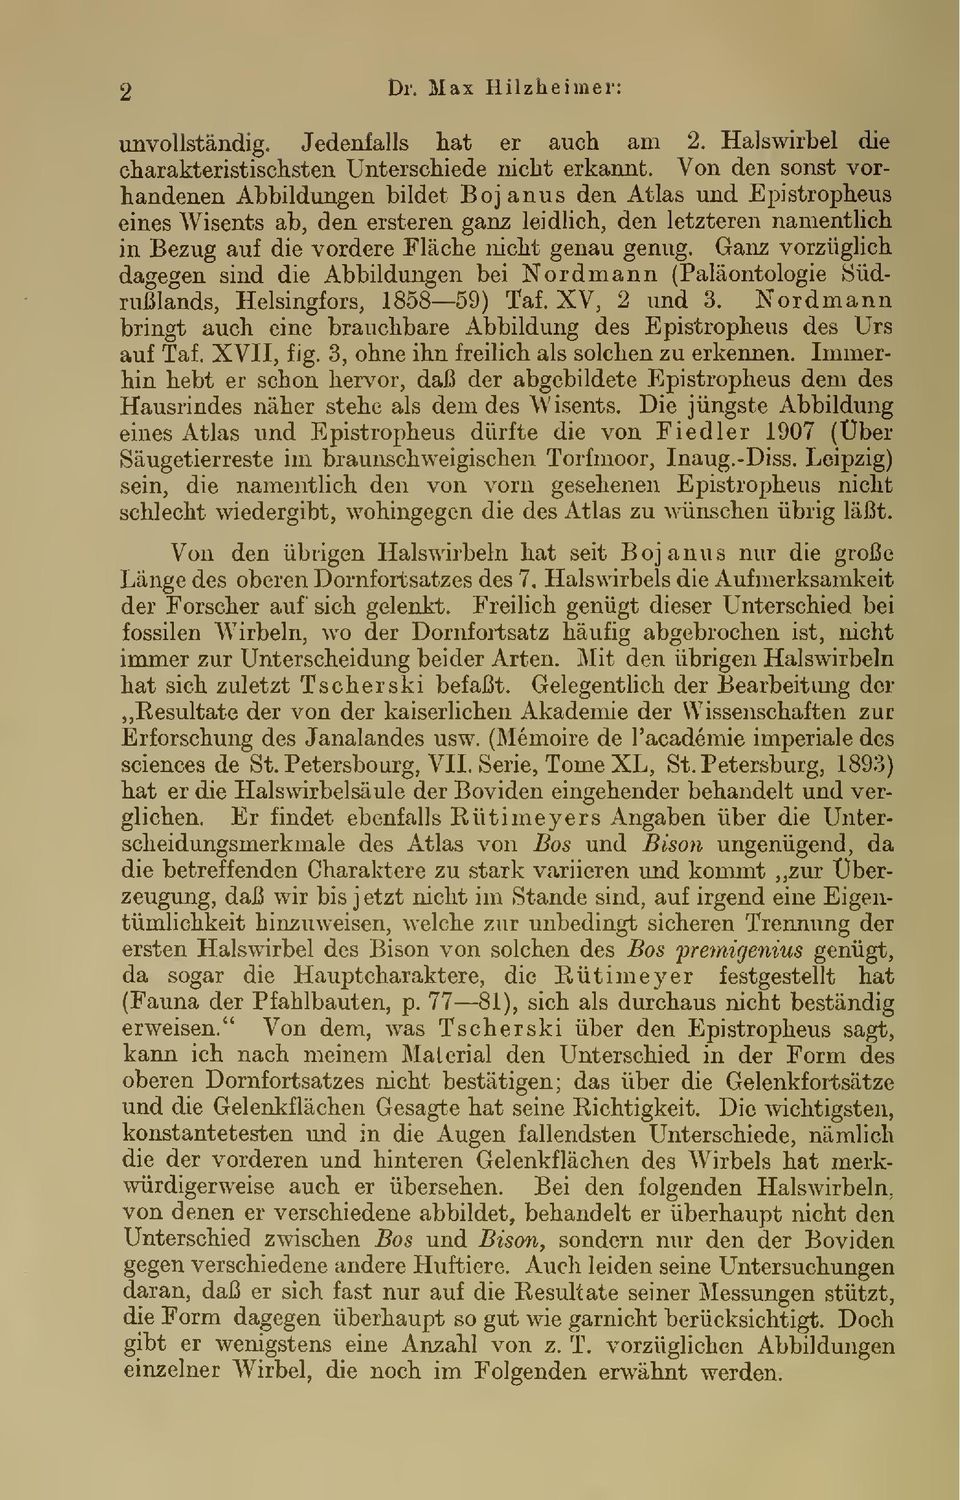 Ganz vorzüghch dagegen sind die Abbildungen bei Nordmann (Paläontologie Südrußlands, Helsingfors, 1858 59) Taf. XV, 2 und 3.